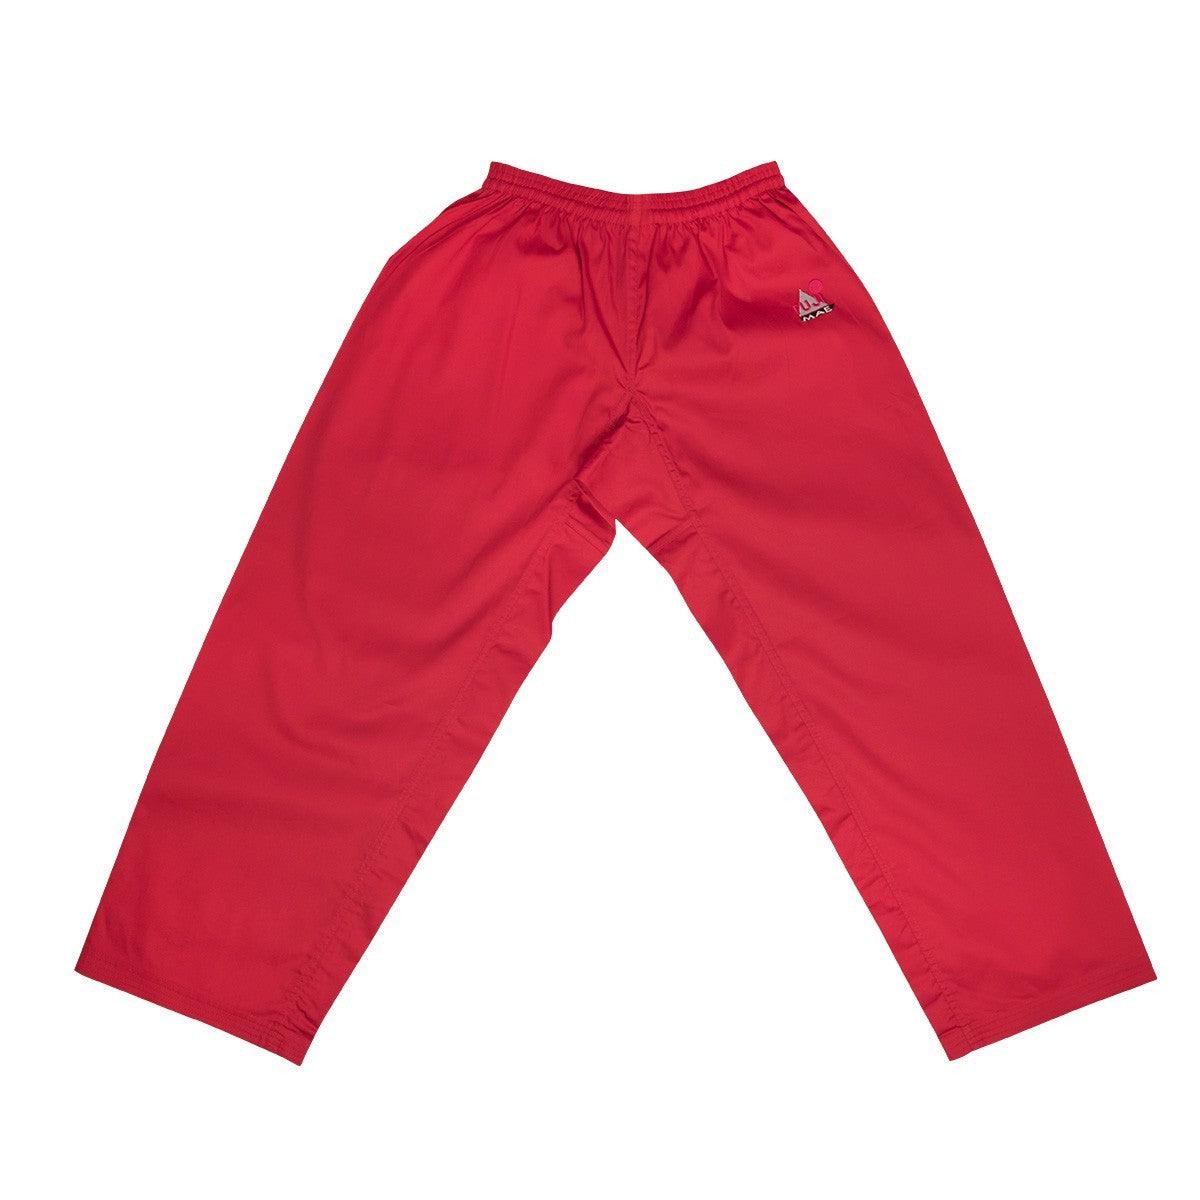 Pantalon de Karate Training Fuji Mae 10015 rouge - Boutique des Arts Martiaux